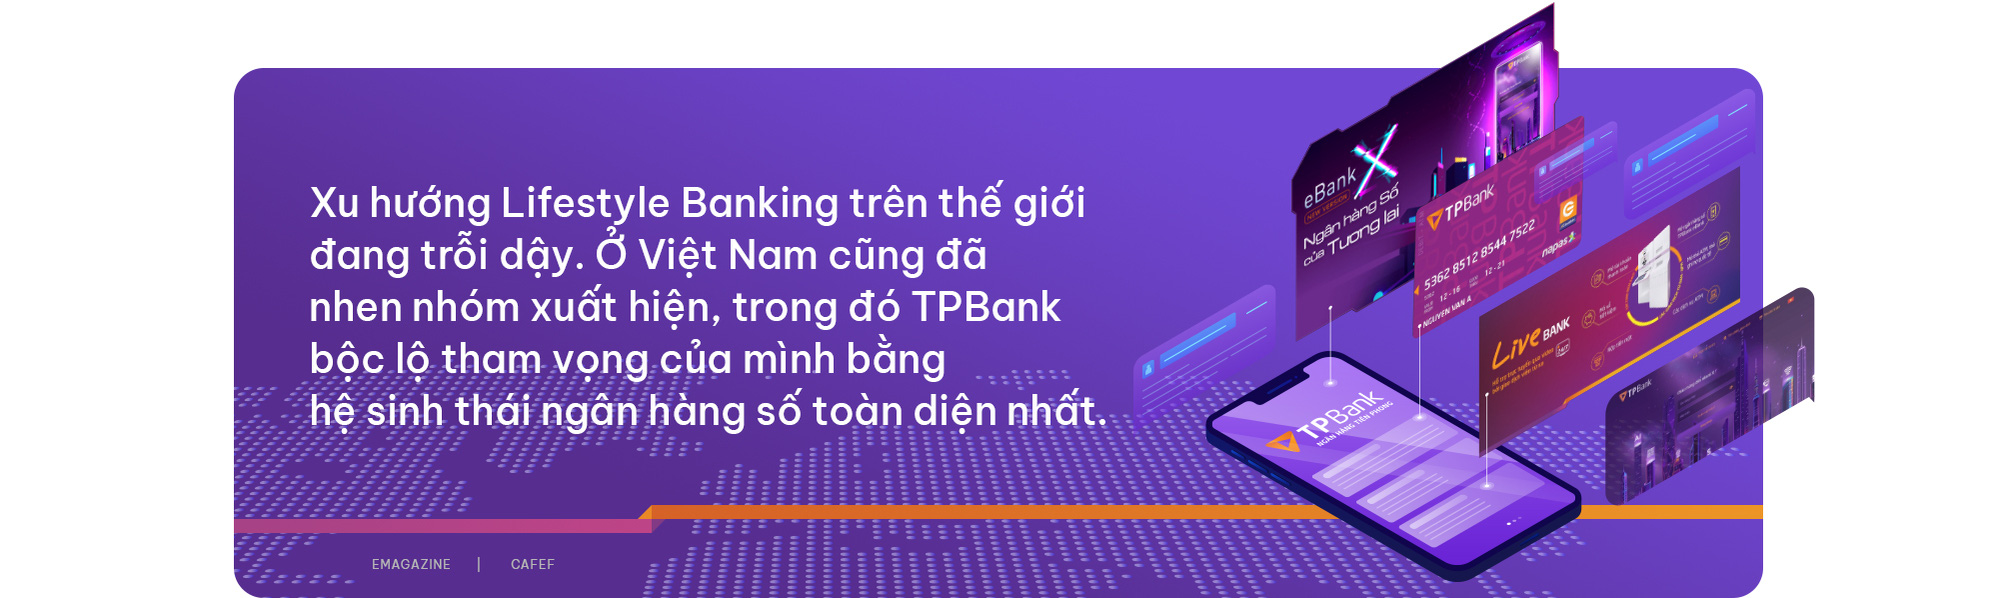 Tạo phong cách sống bằng dịch vụ ngân hàng” dịch vụ tương lai hiện hữu tại TPBank - Ảnh 6.